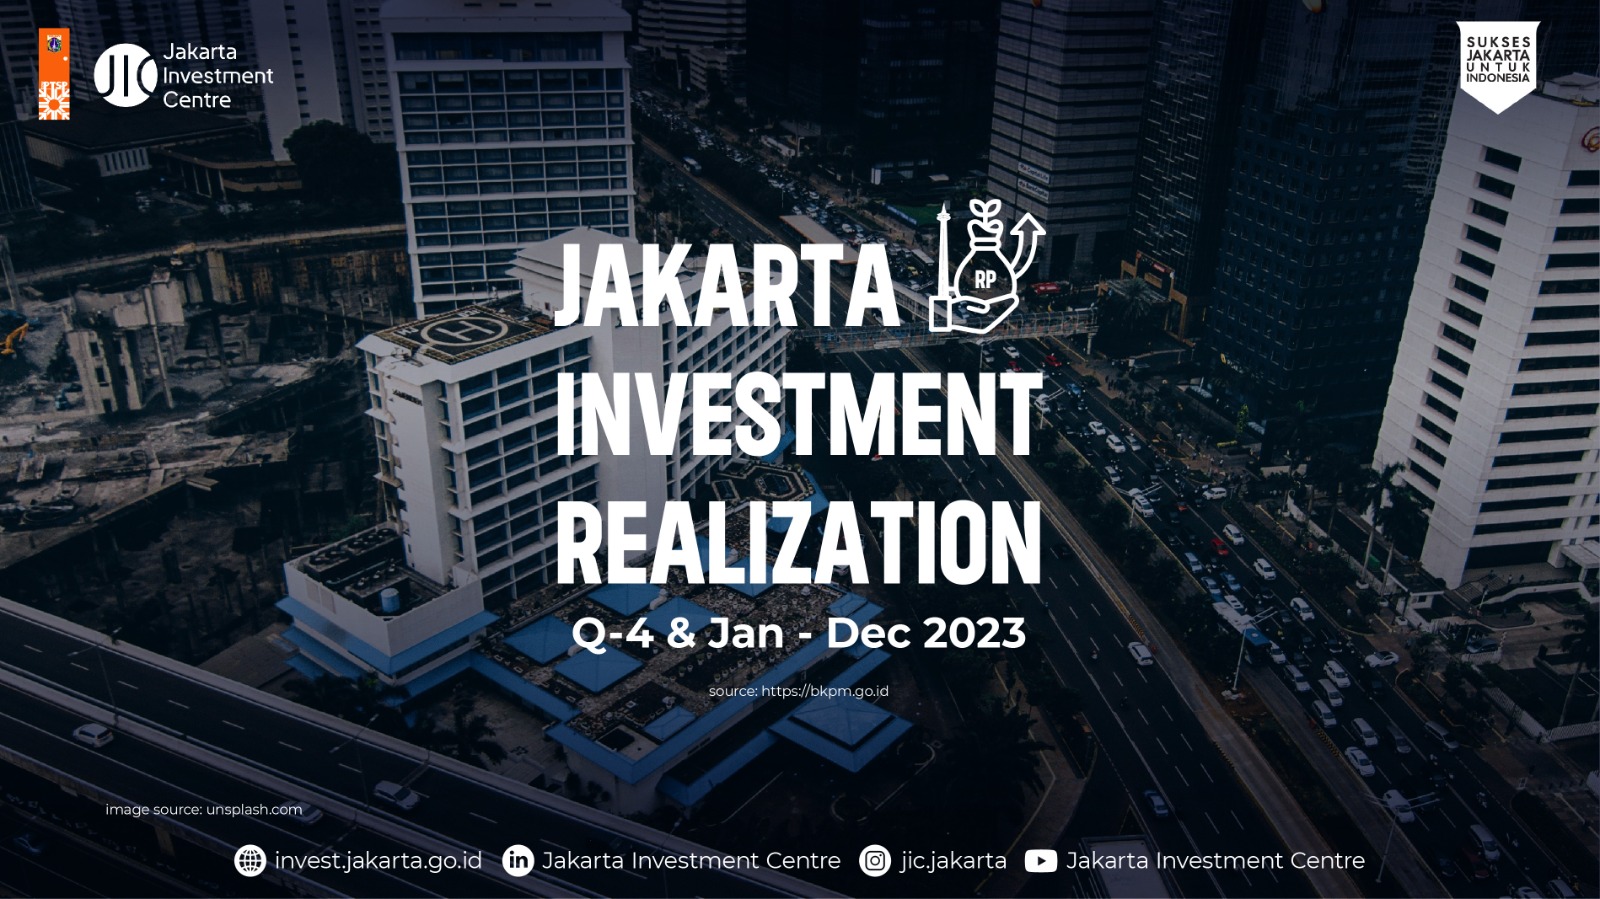 Jakarta Investment Realization Q-4 & Jan - Dec 2023